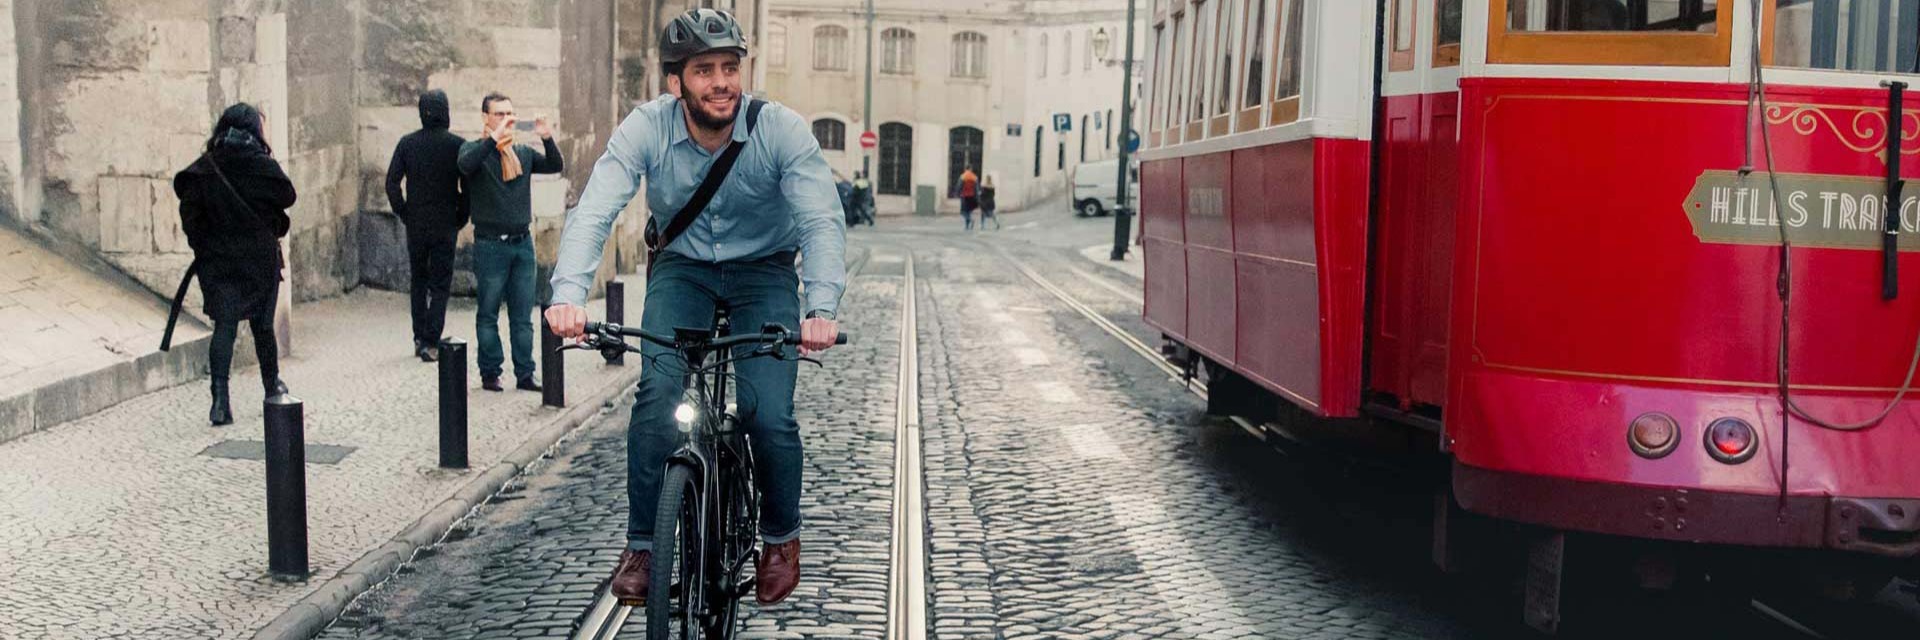 E-bikes make commuting by bike easy